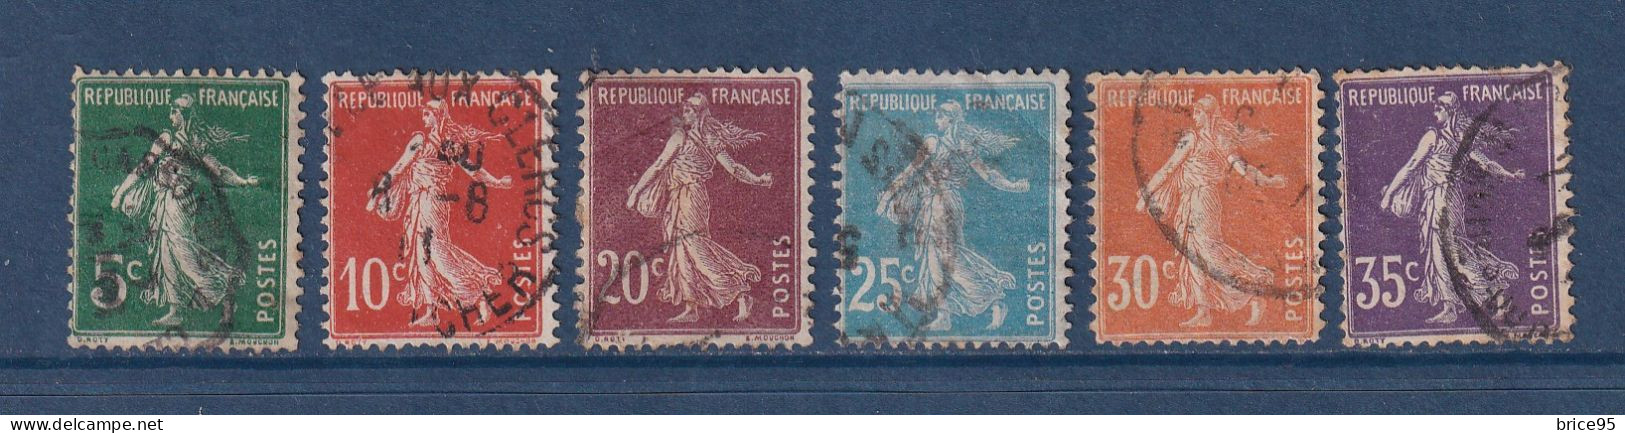 France - YT N° 137 à 142 - Oblitéré - 1907 - Used Stamps